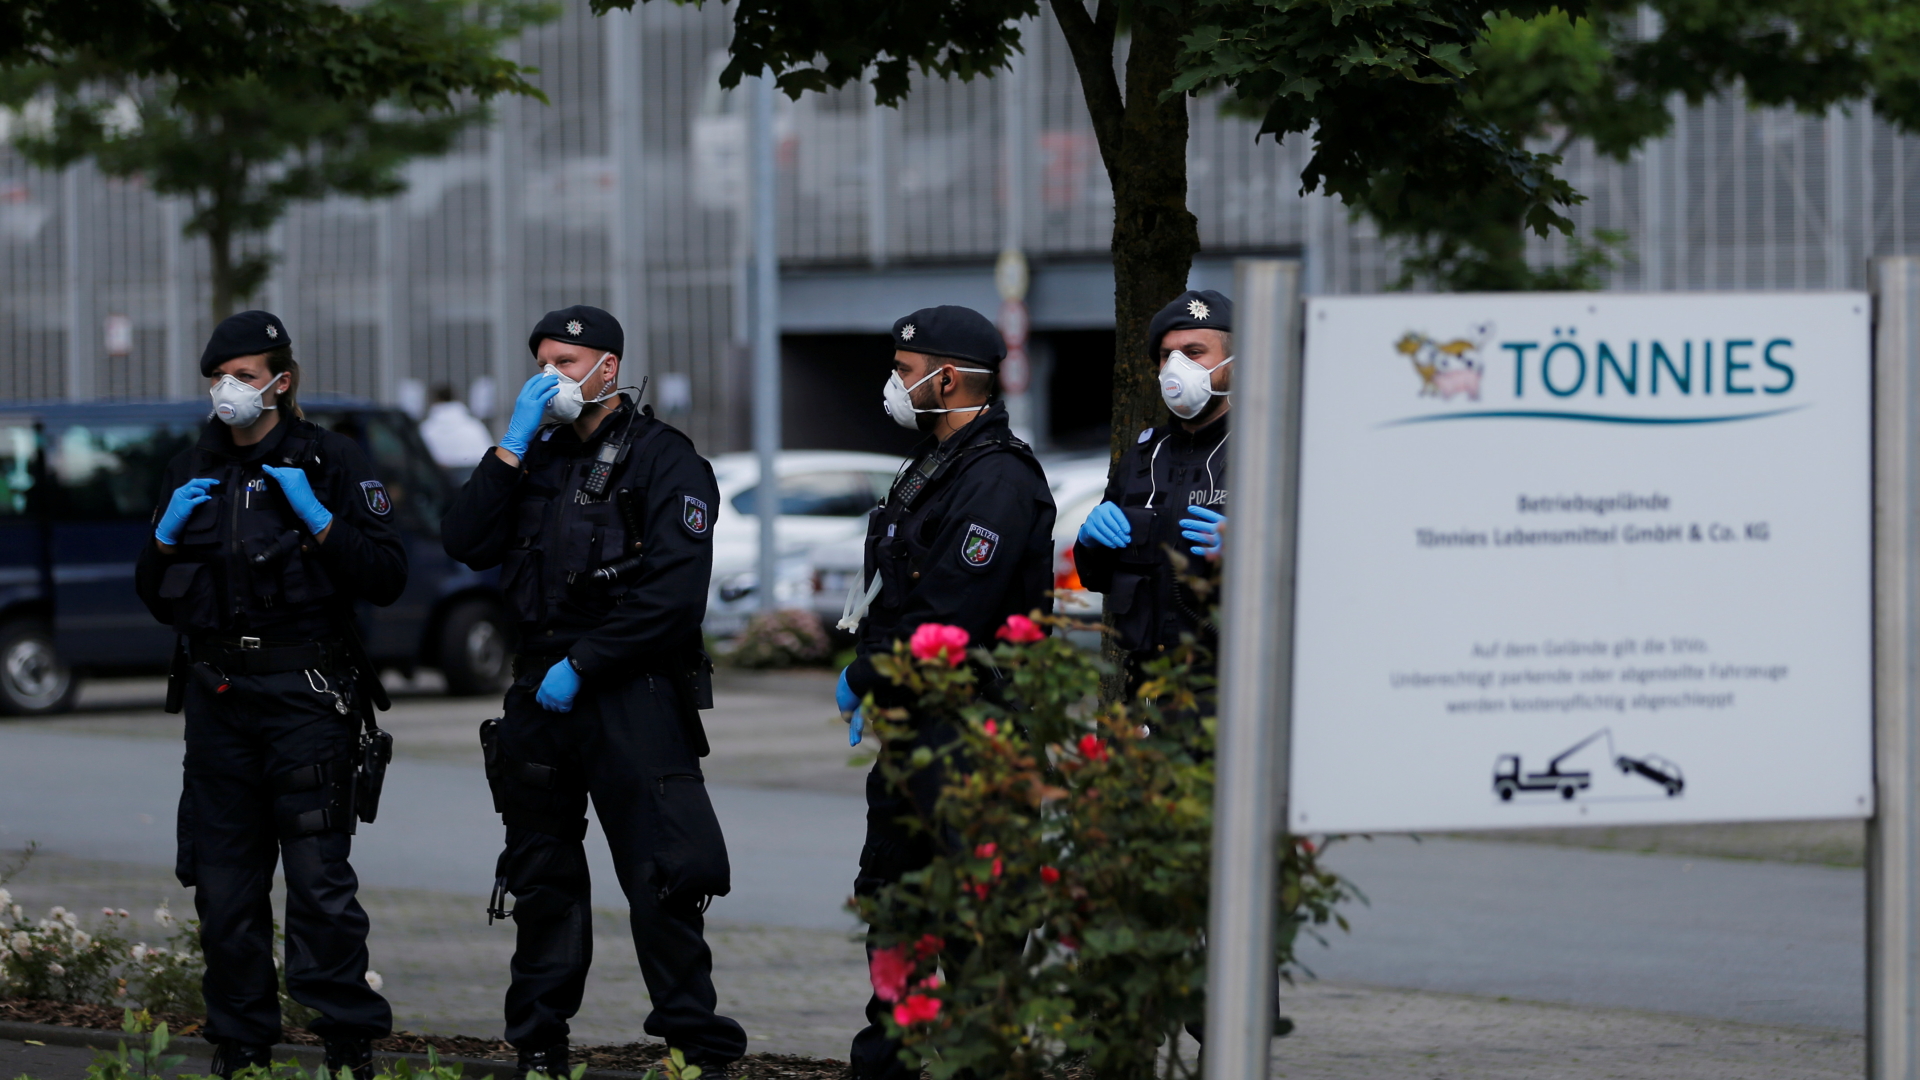 Polizisten vor dem Tönnies-Betriebsgelände | REUTERS